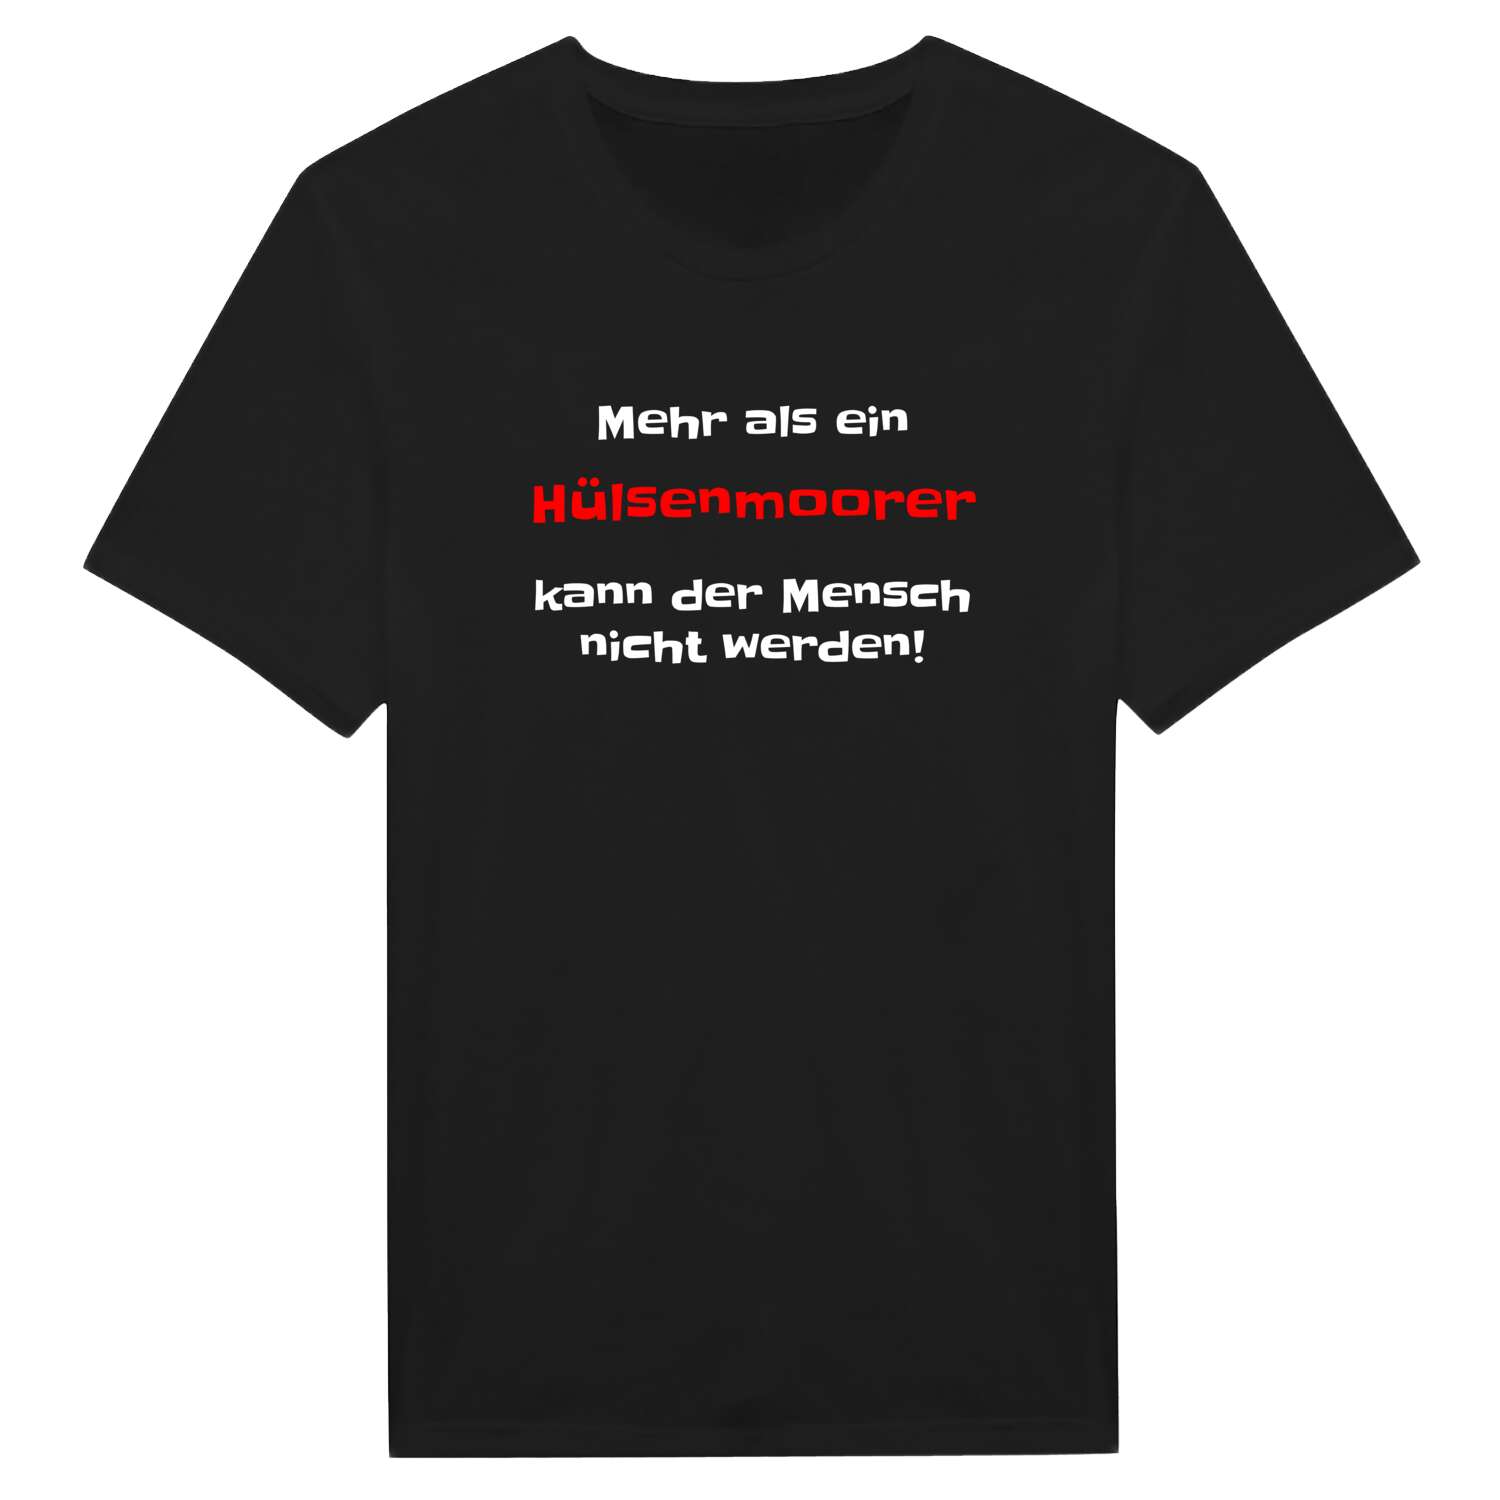 Hülsenmoor T-Shirt »Mehr als ein«